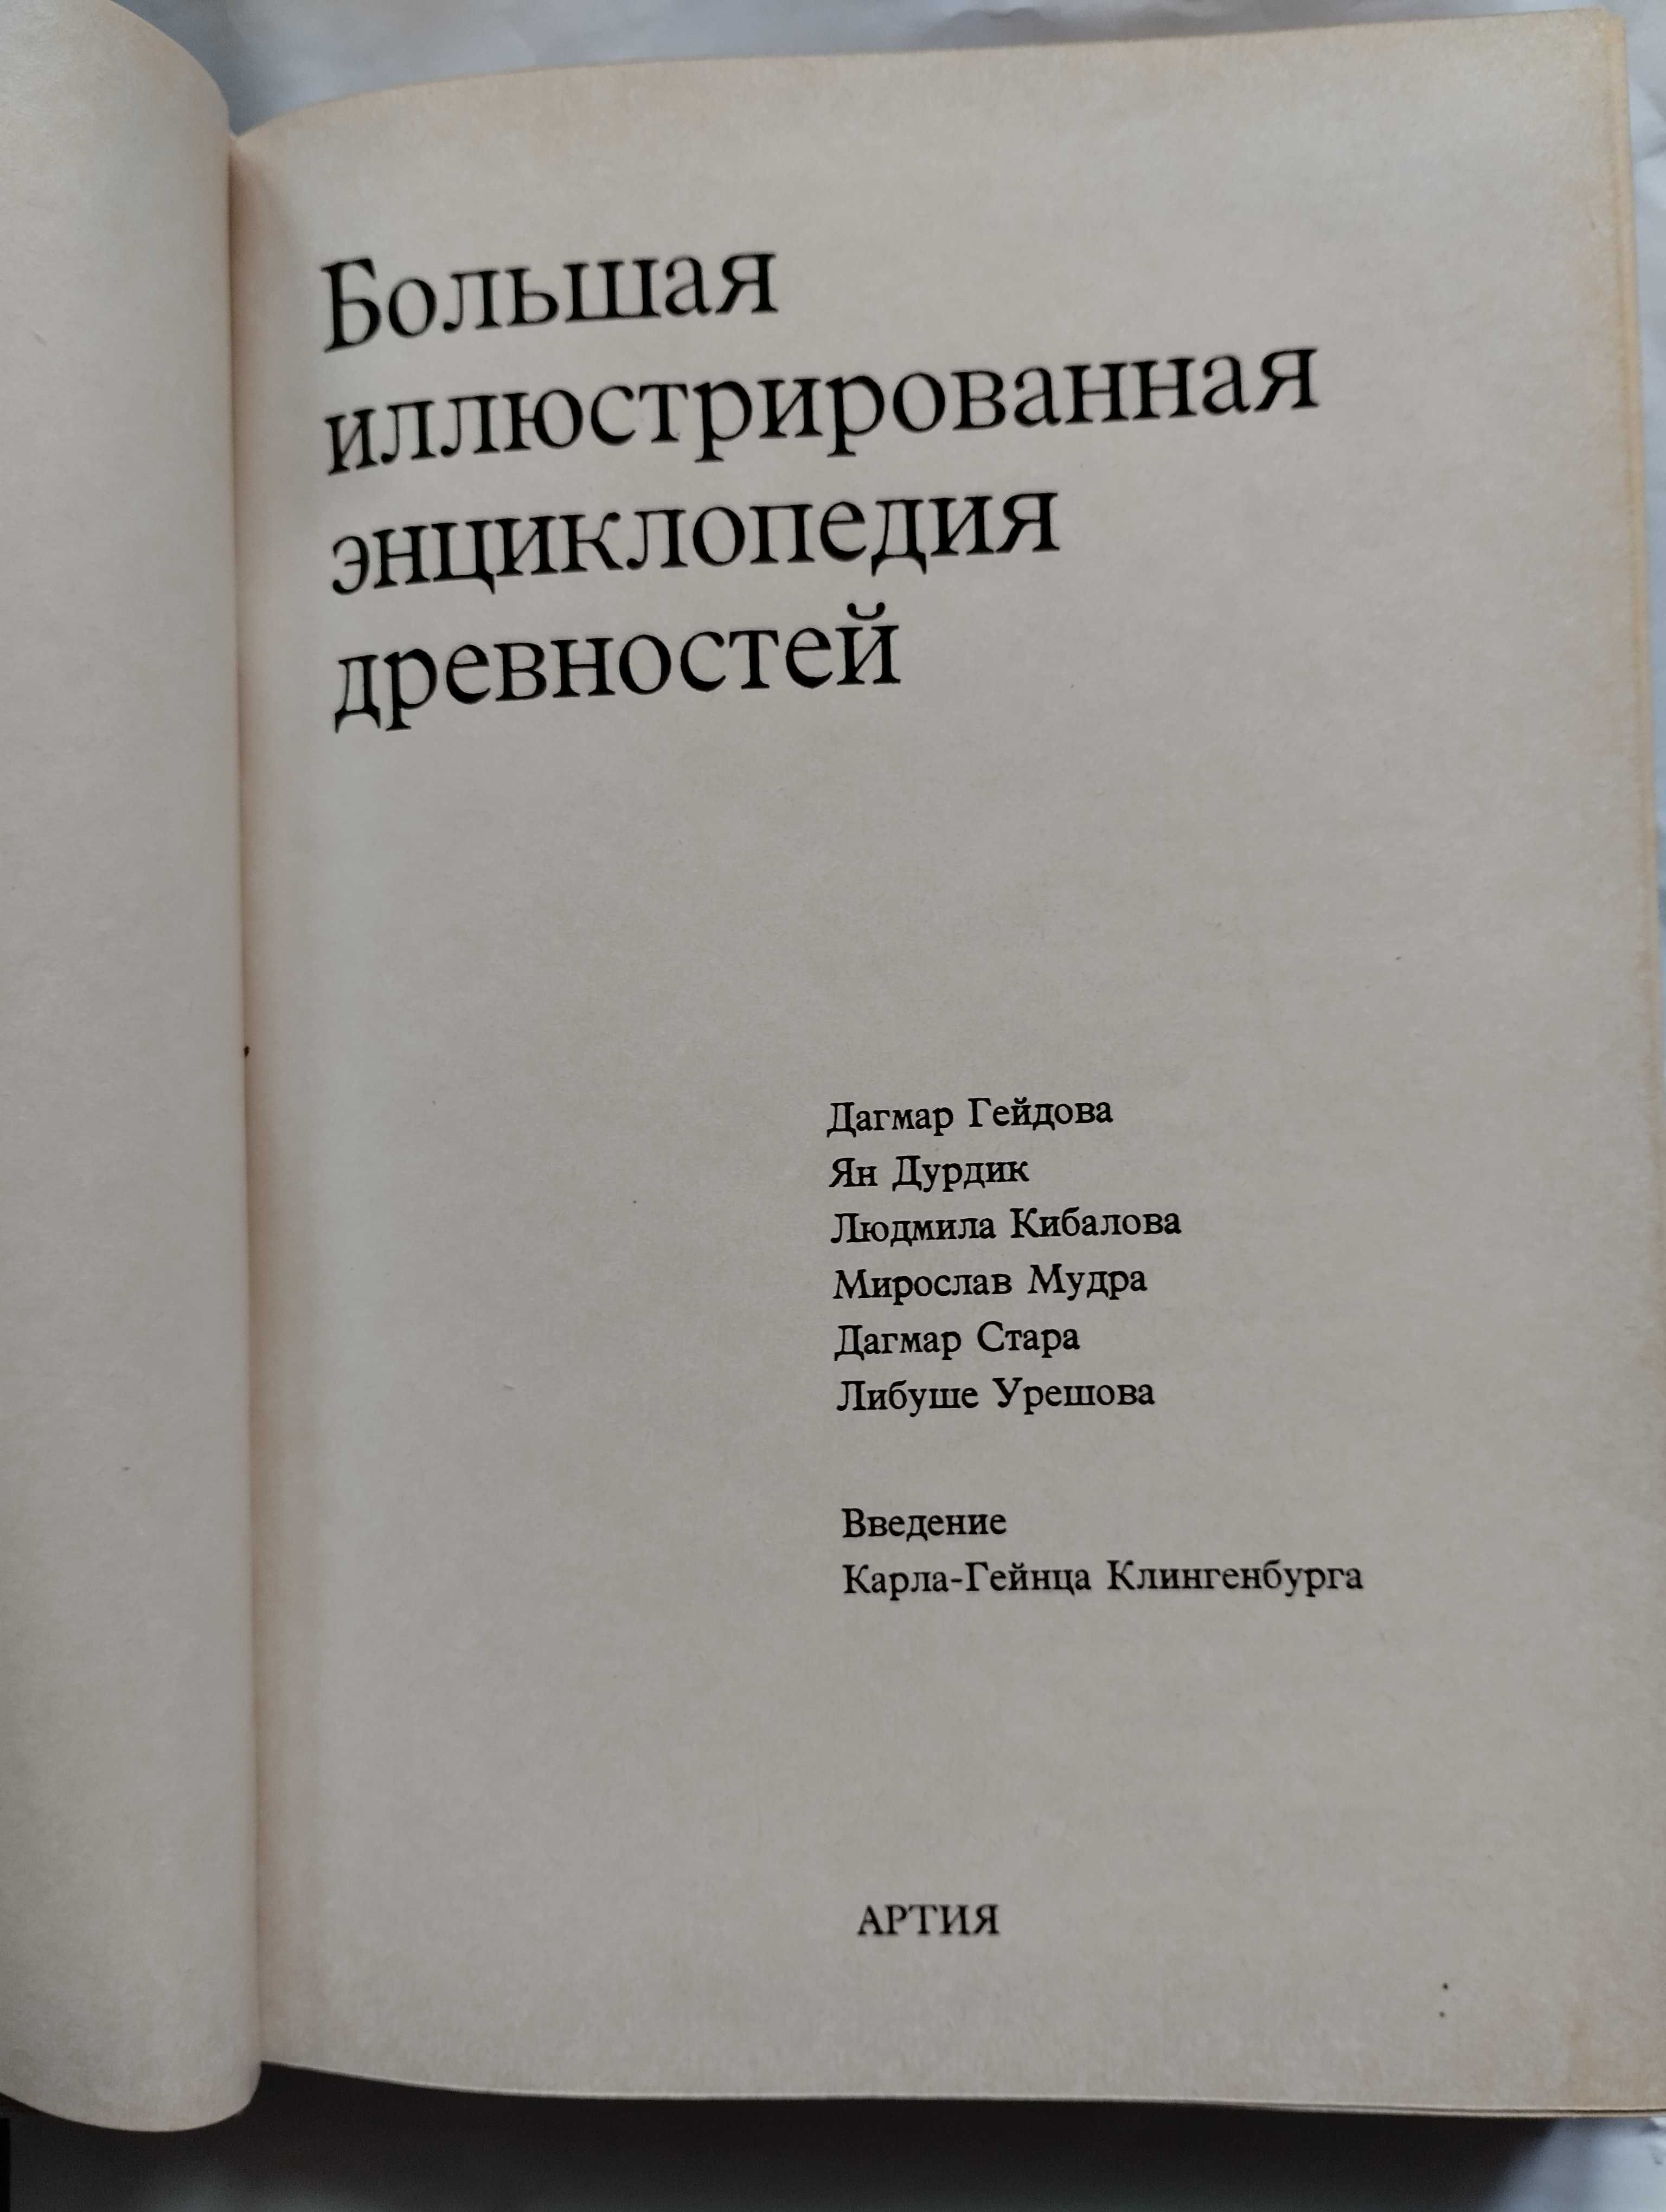 Новая книга Энциклопедия древностей . Не открывалась.